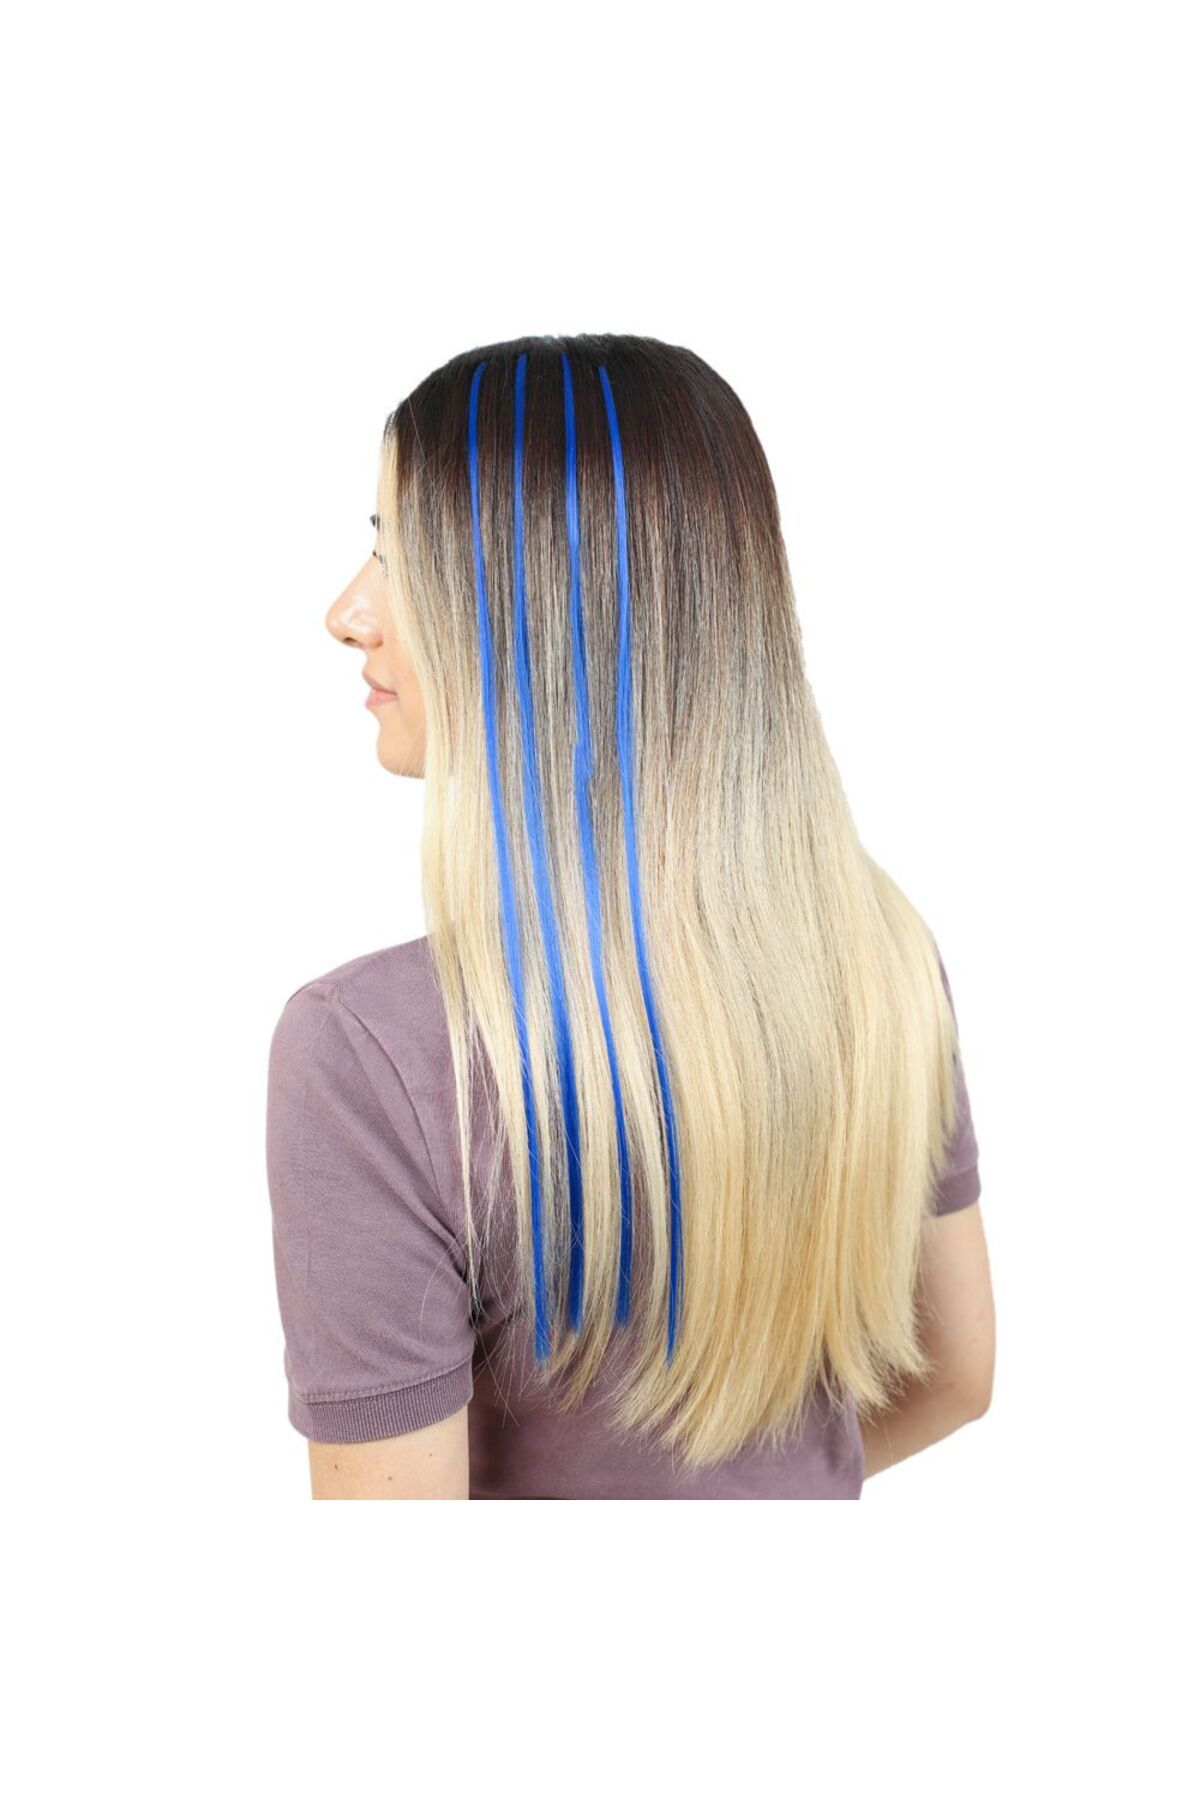 SILA Renkli Sentetik Boncuk Kaynaklık Saç + Takım Aparatı - Koyu Mavi - 10 Adet